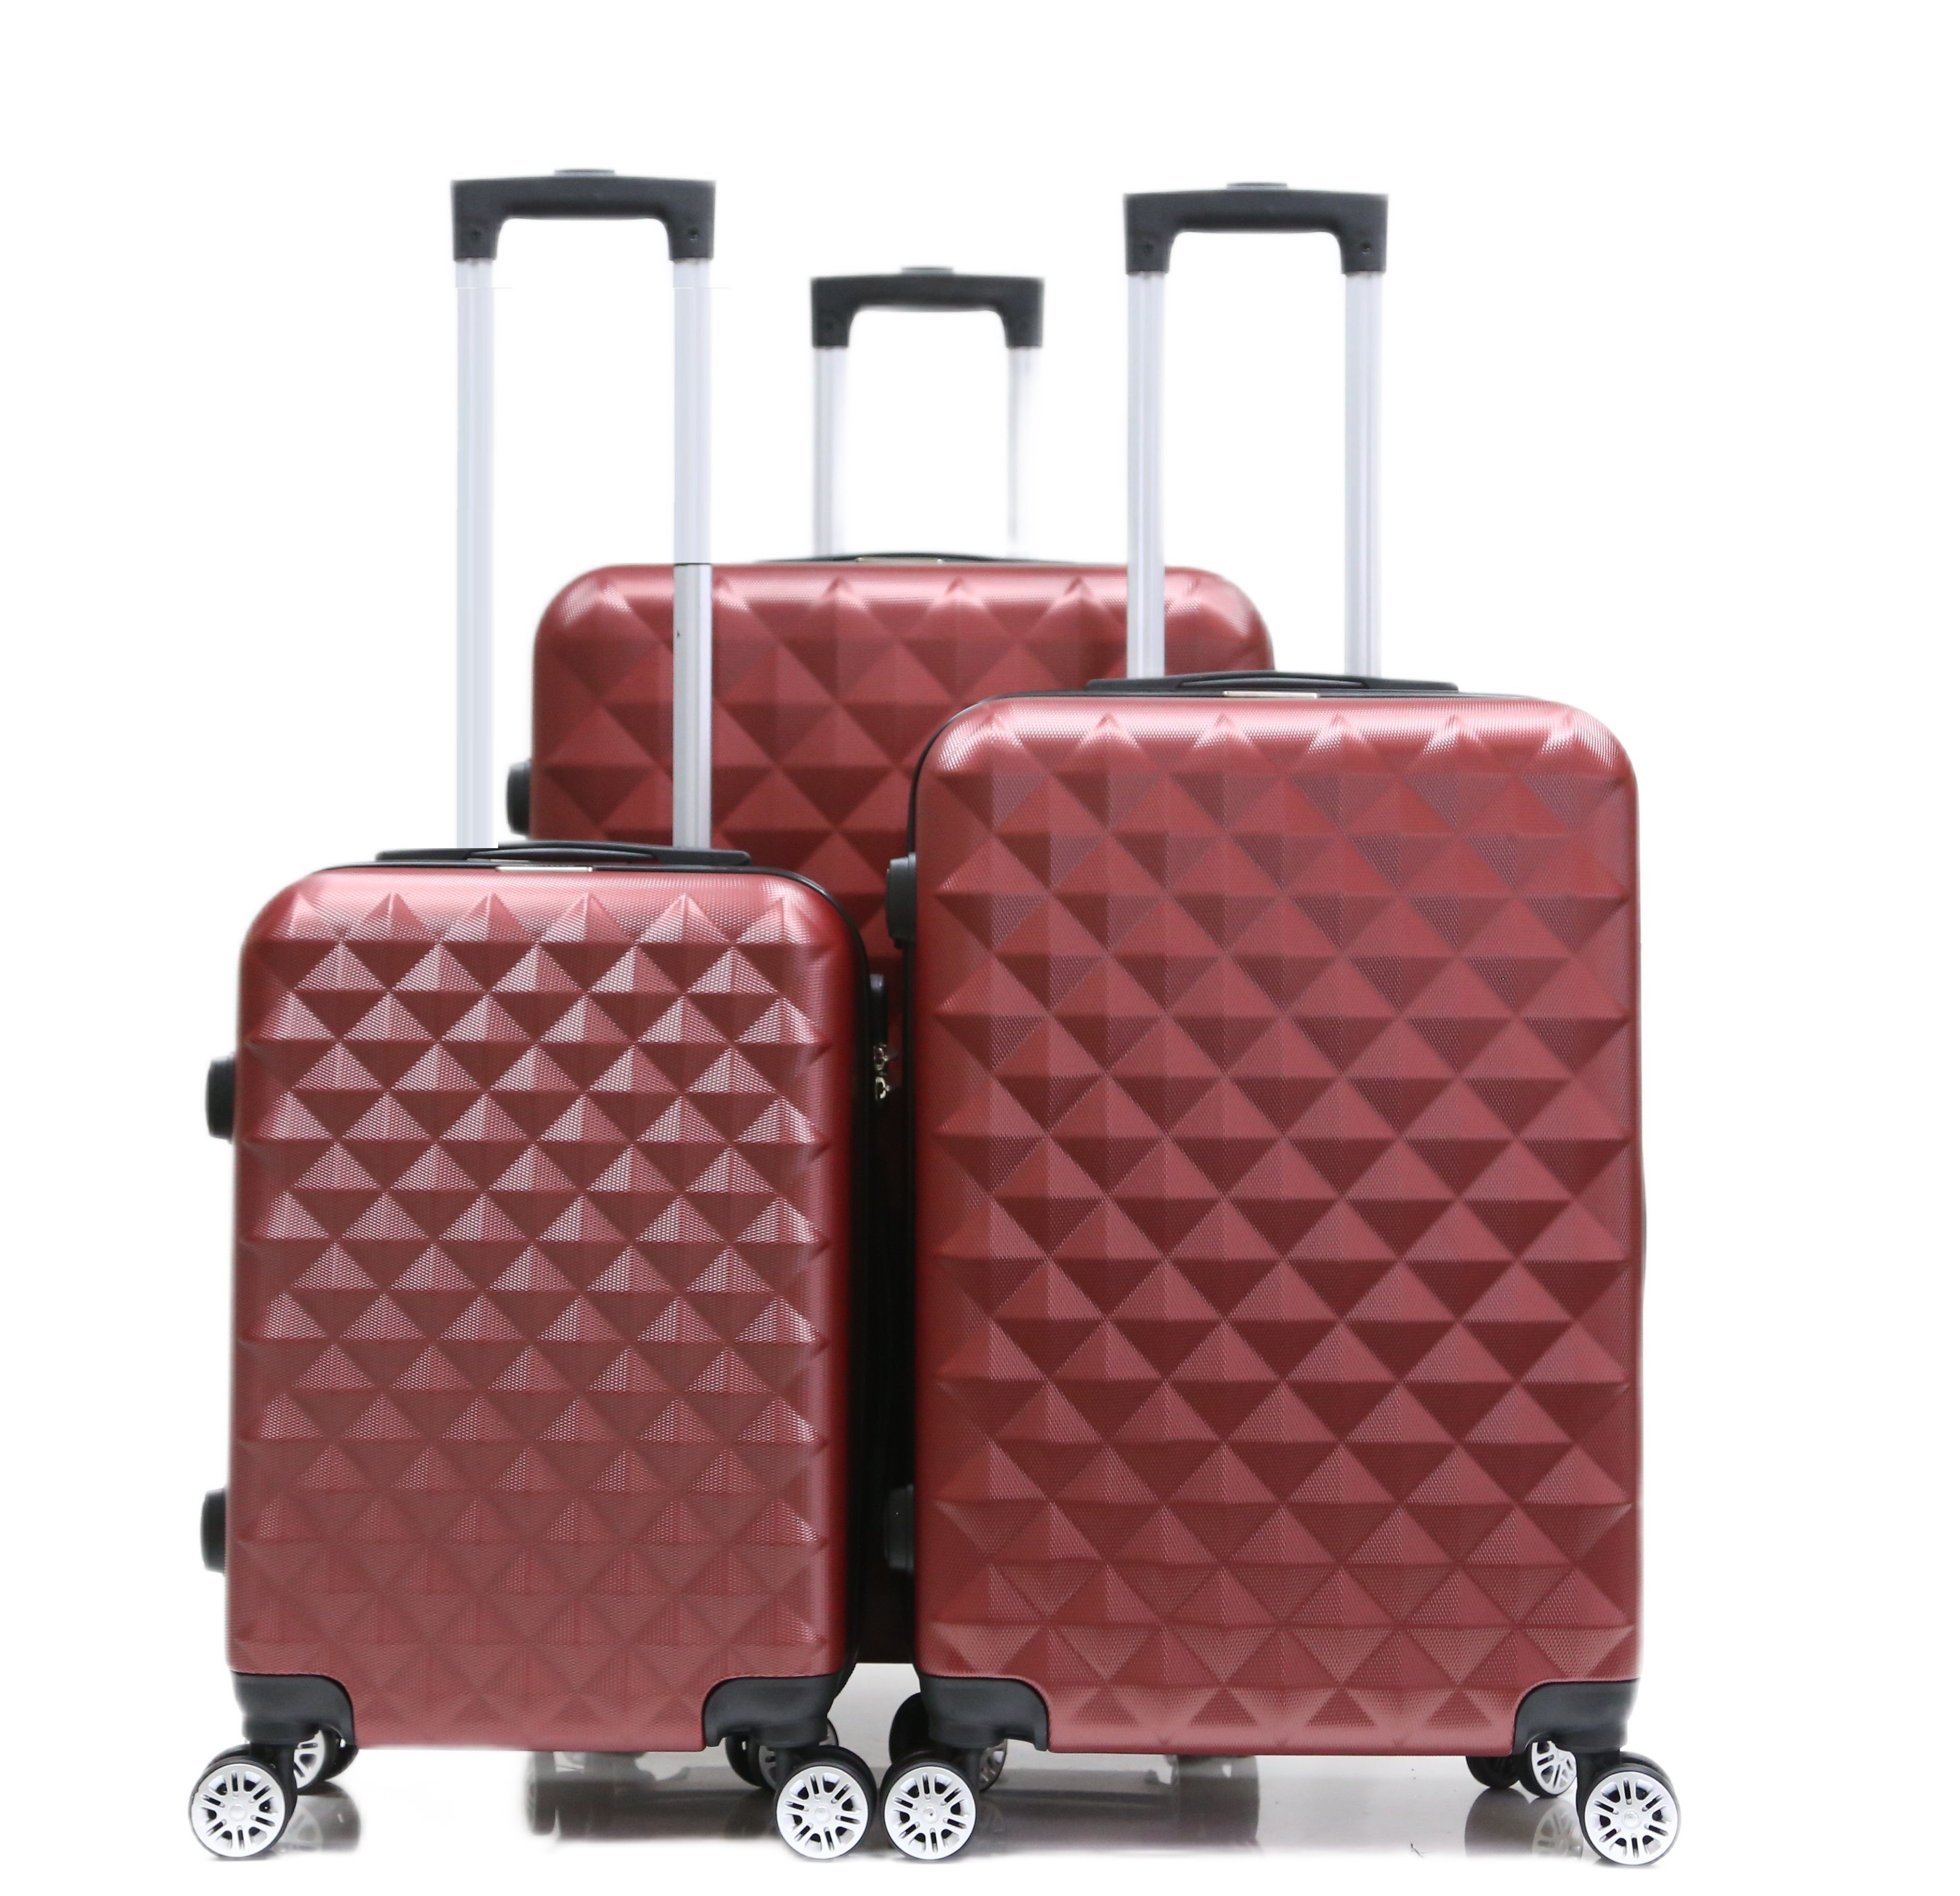 Cheffinger Koffer Koffer 3 tlg Hartschale Trolley Set Kofferset Handgepäck ABS-07, 4 Rollen Rot